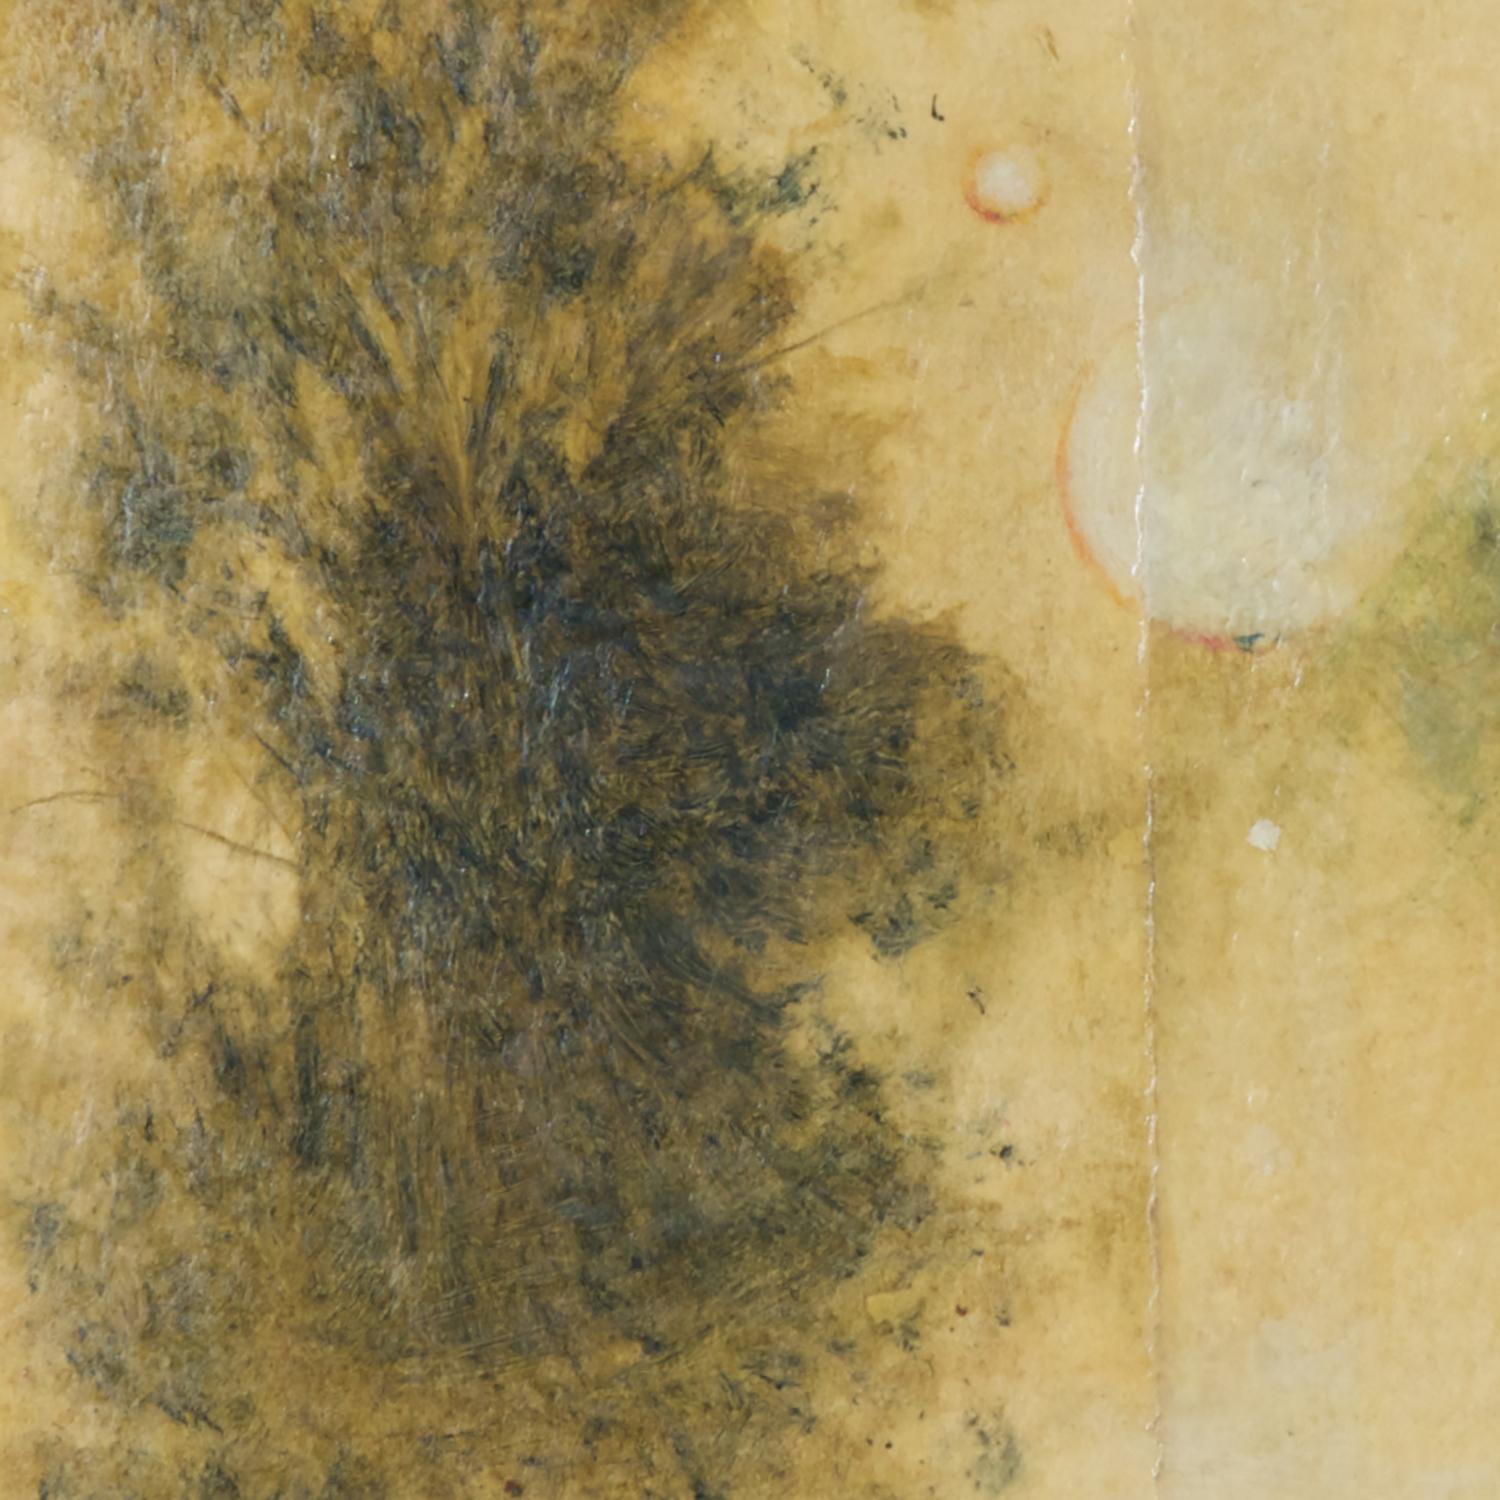 techniques mixtes sur papier ; non encadré

Le peintre néoromantique Hiro Yokose fusionne de multiples couches de cire et de peinture à l'huile pour créer des paysages mystérieux et voilés, illuminés par des éclairs de lumière dans le ciel et des